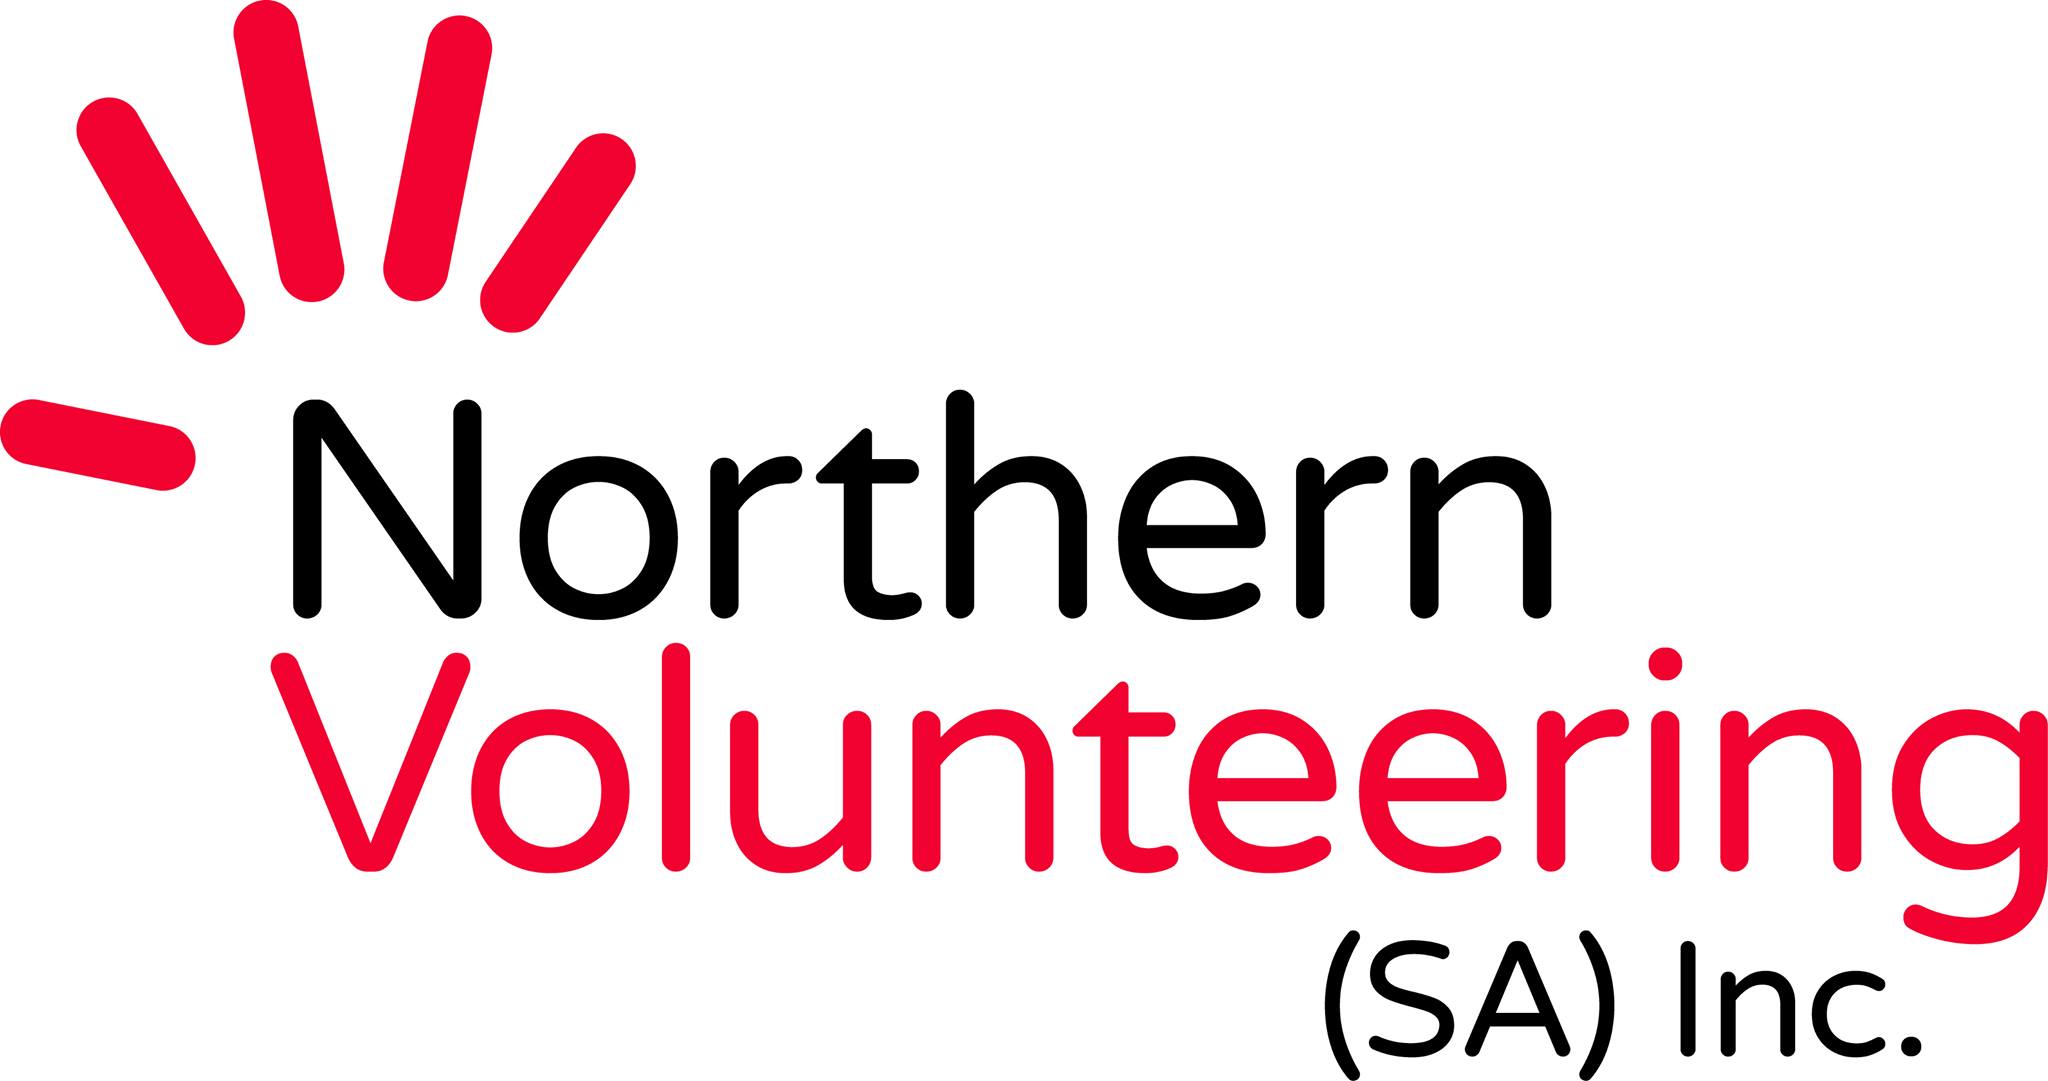 北方志愿服务 SA 公司